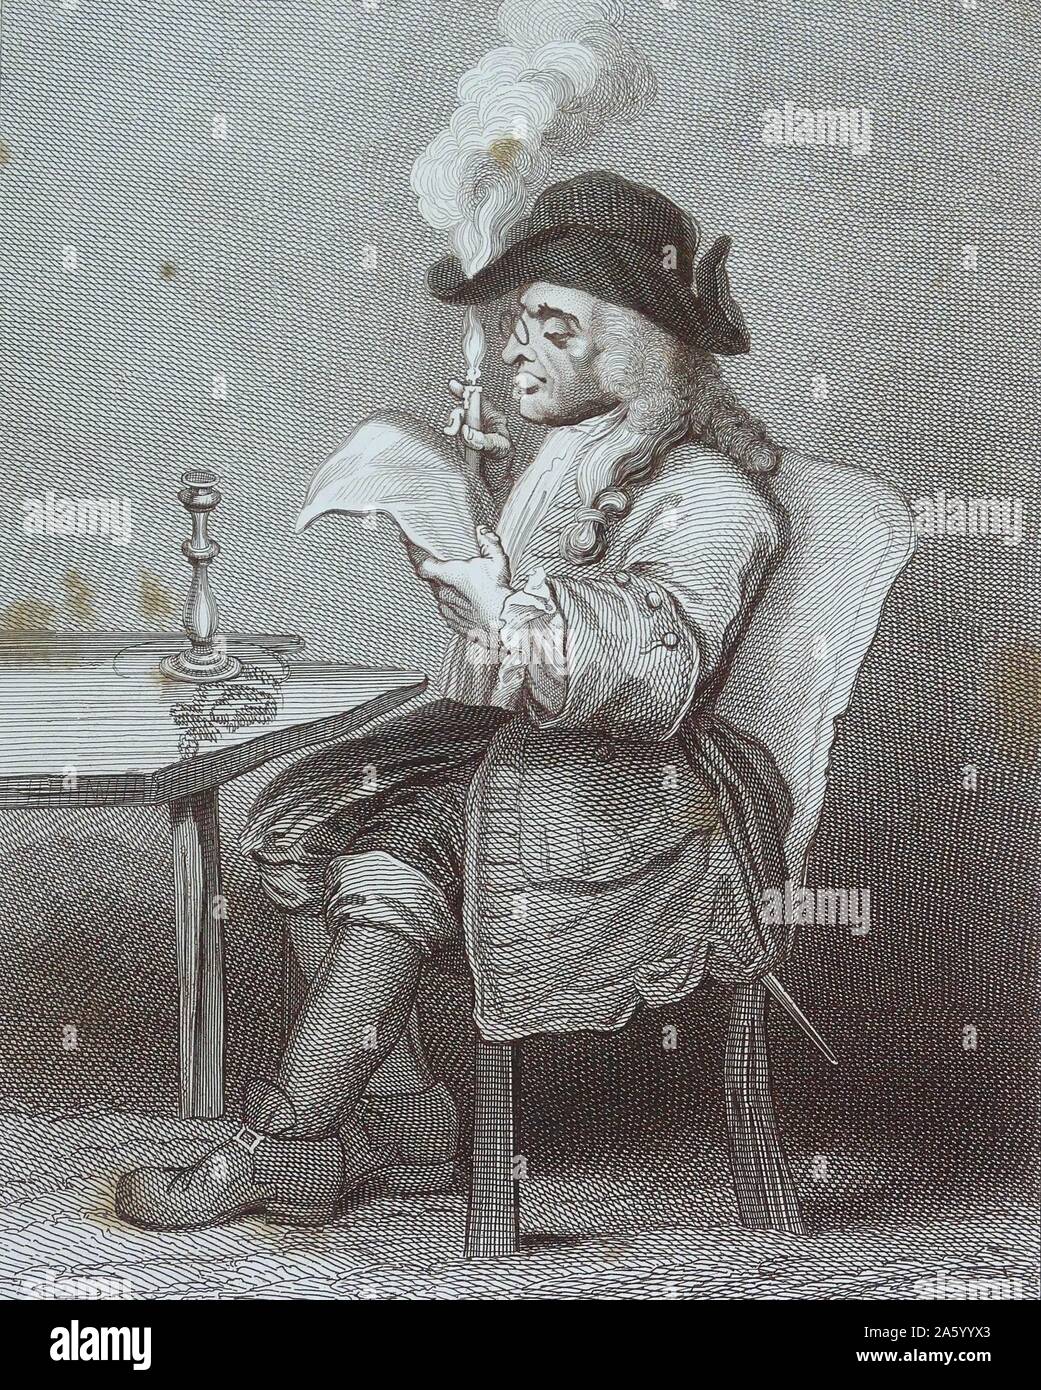 Incisione intitolata 'Il Candidato' da William Hogarth (1697-1764) pittore inglese, printmaker, pittoriche satiro, critico sociale e fumettista editoriale che è stato accreditato con pionieristico di western arte sequenziale. Datata xviii secolo. Foto Stock